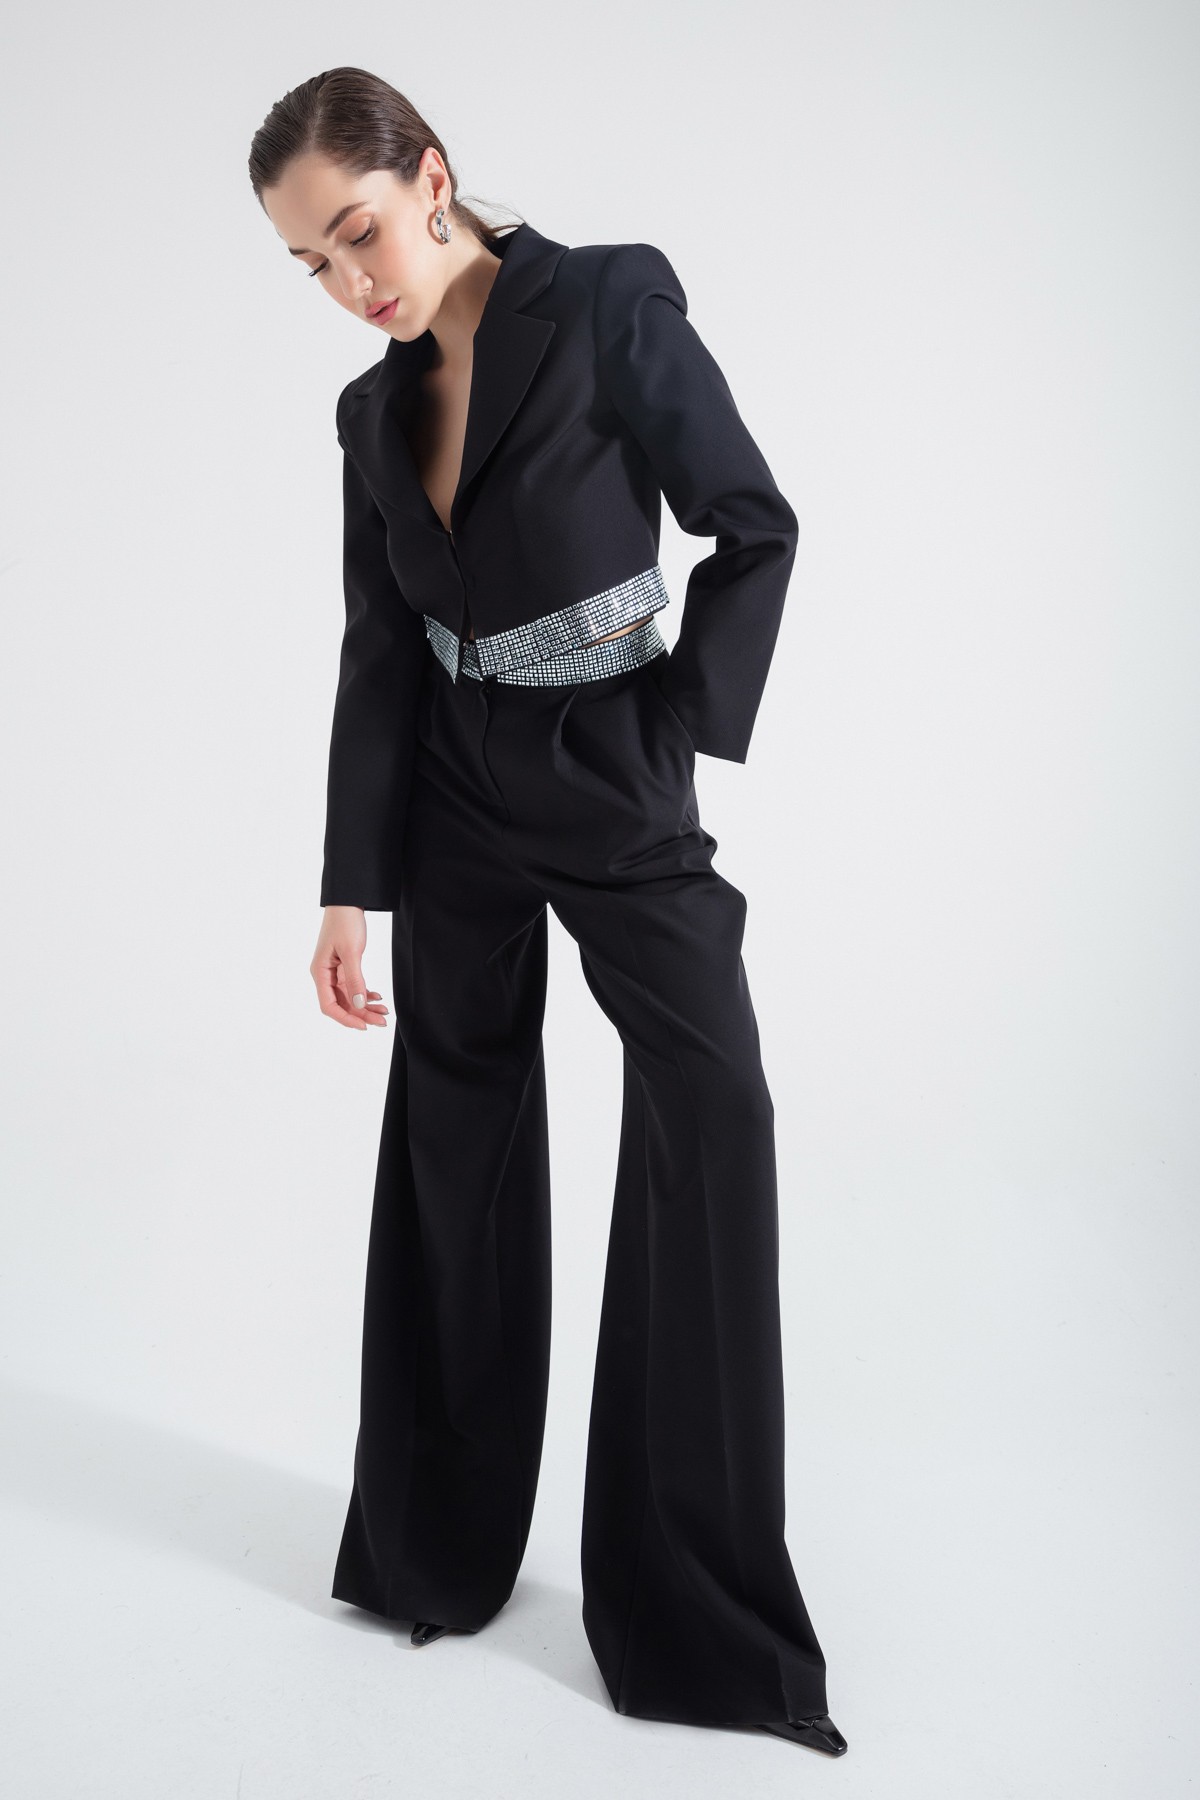 Kadın Tasarım Ceket Pantolon Takım - Siyah